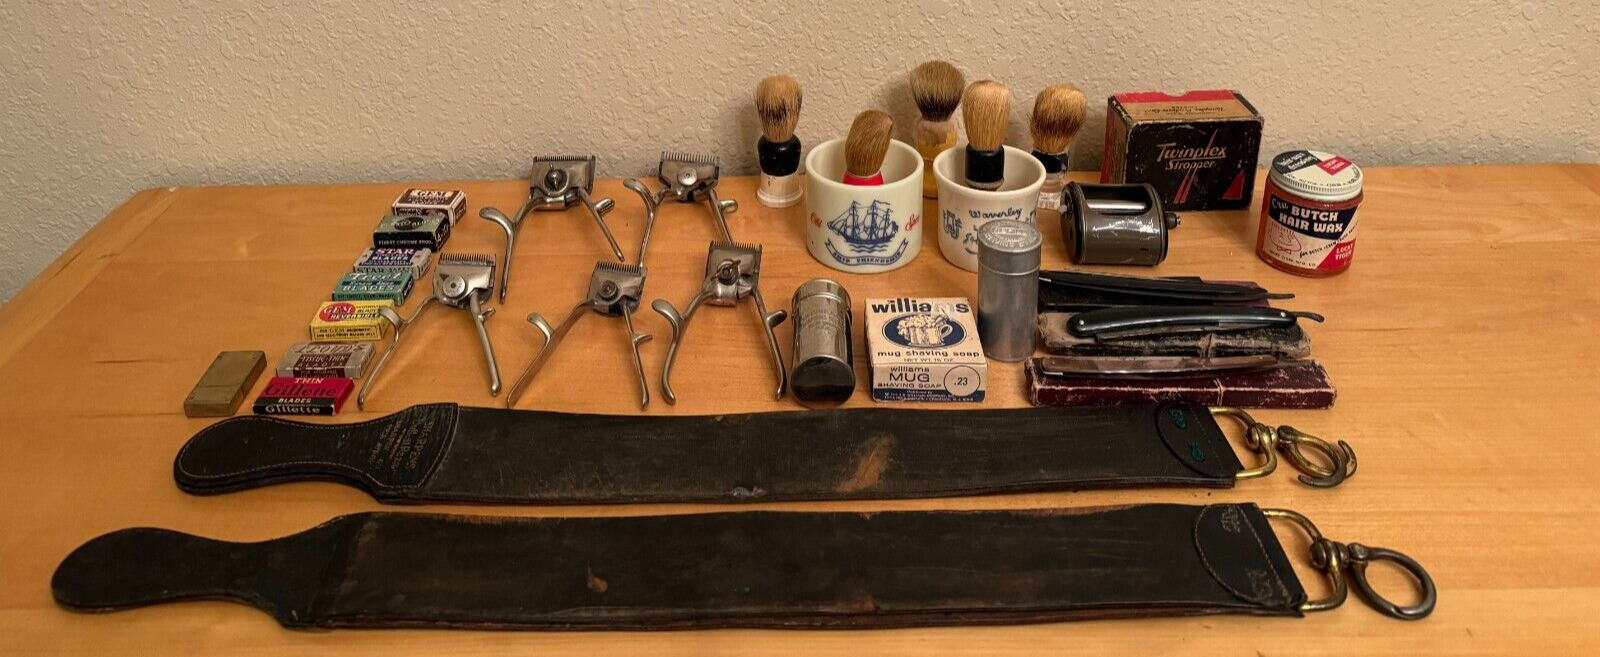 Vintage Lot Barbershop Shaving Blades, Clippers, Strops, Mugs, Brushes Sharpener